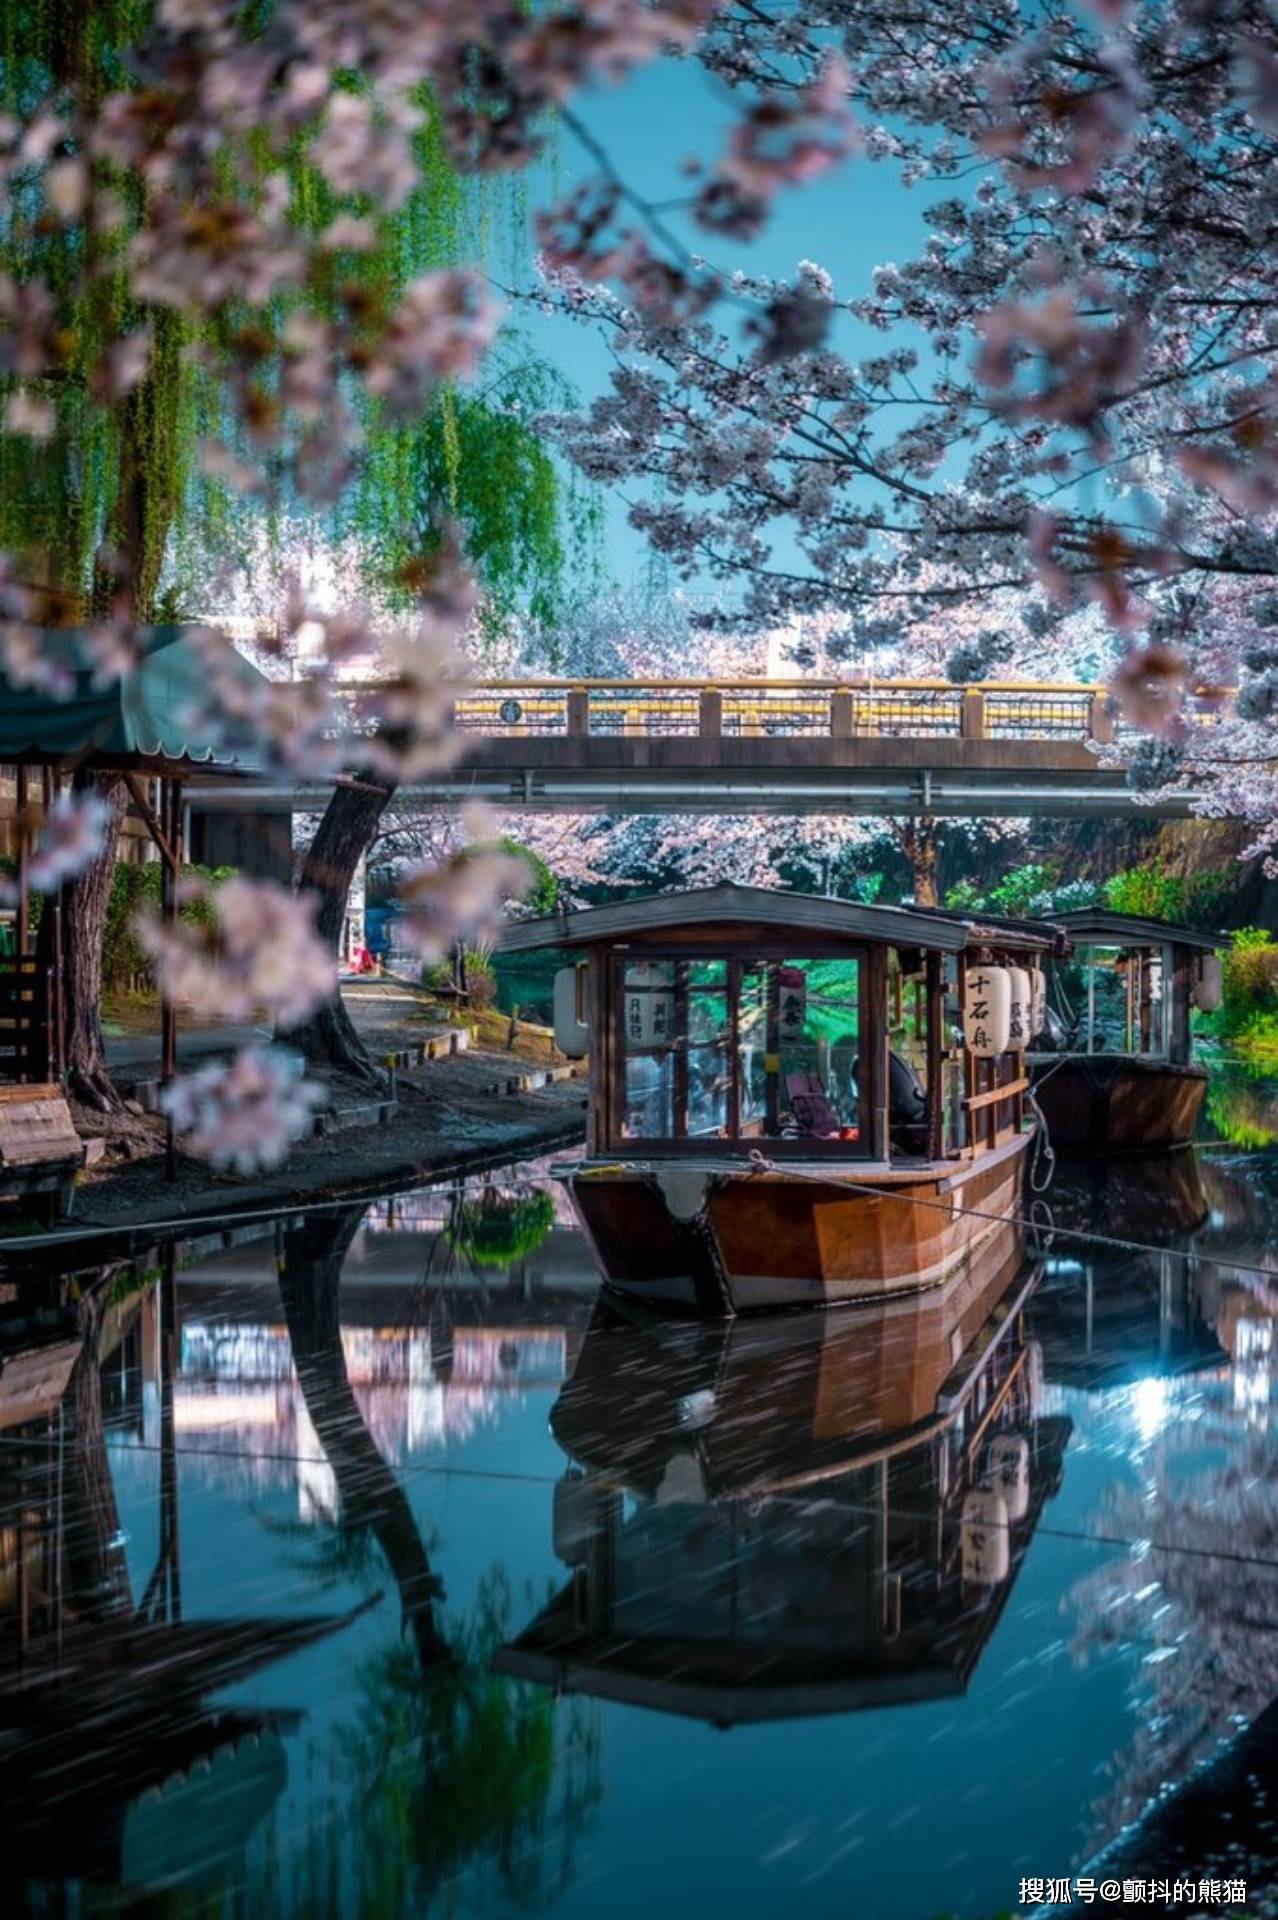 水色之夜 京都伏见十石舟的夜景照片简直就像游戏cg里的场景 世界